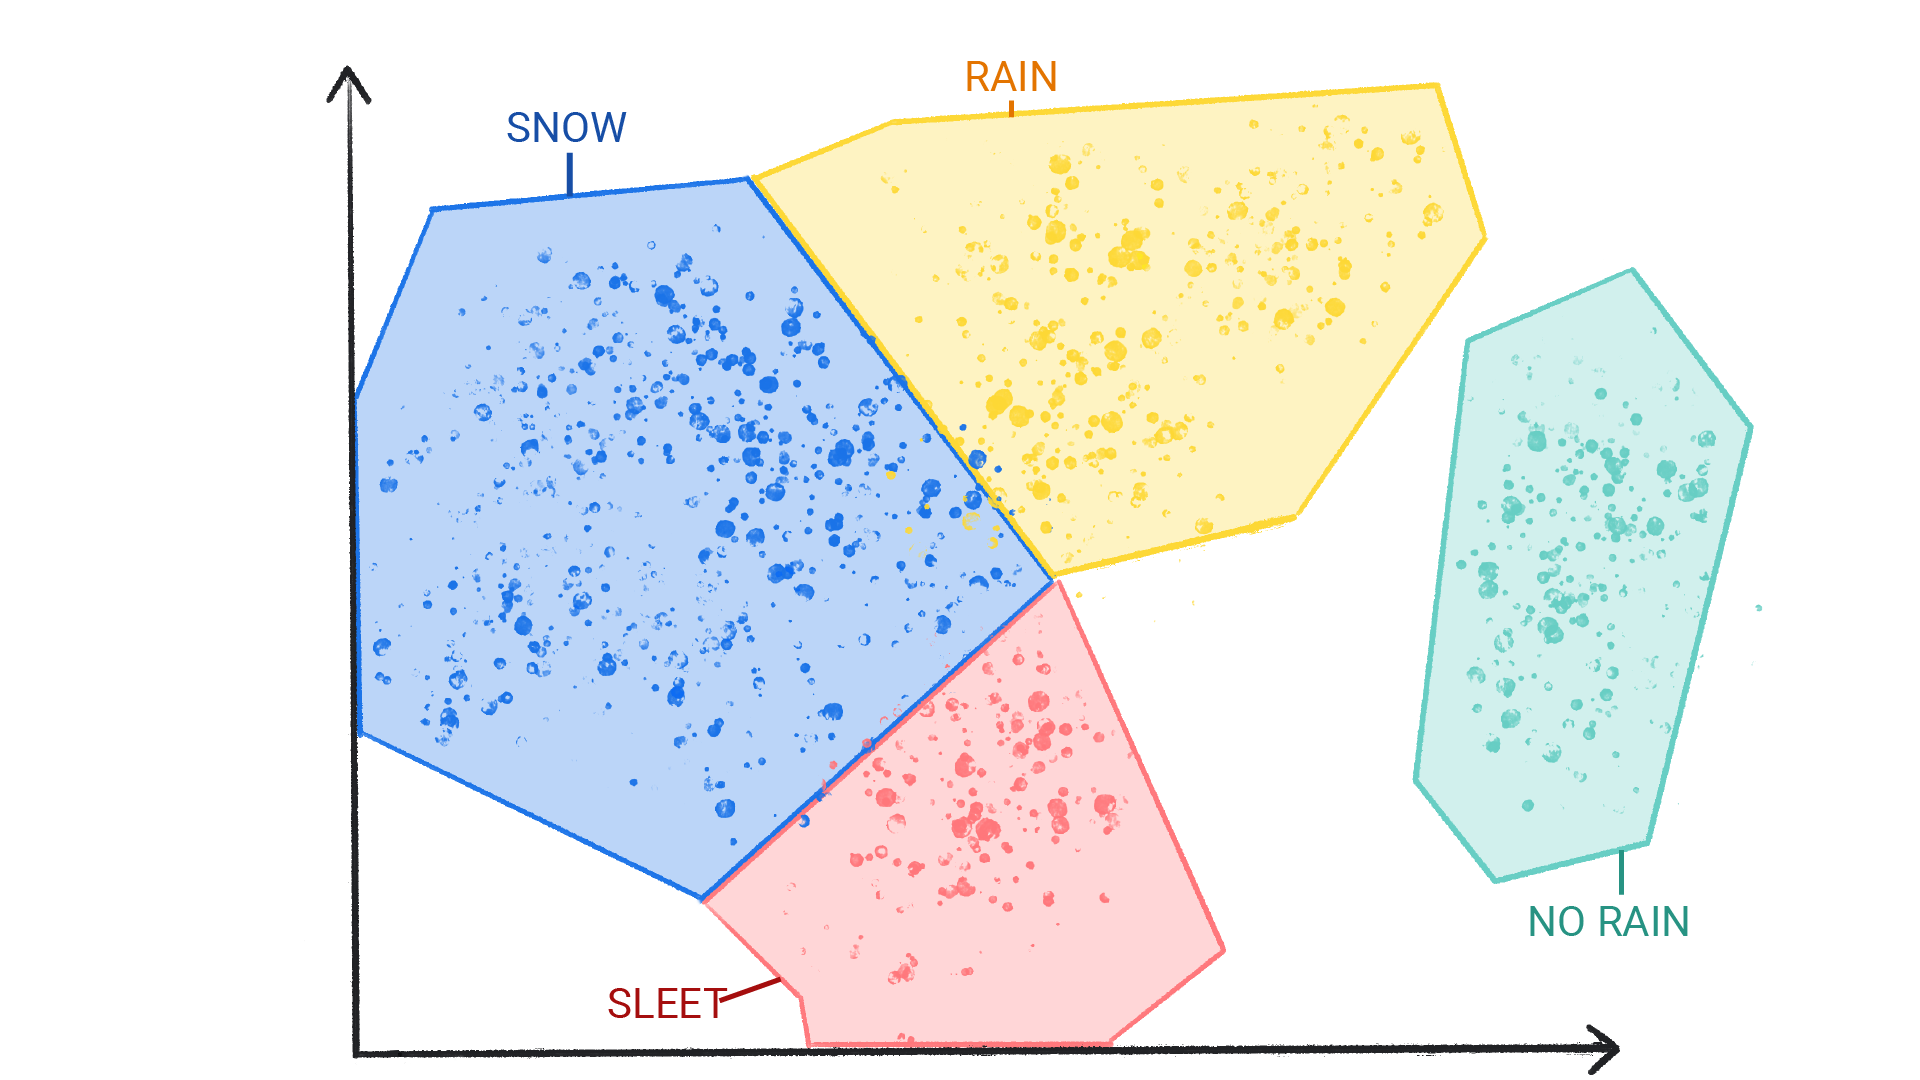 雪、雨、ひょう、雨なしのラベルが付いたクラスタが色付きのドットで、それらの図形が互いに境界を囲む形で囲まれている画像。